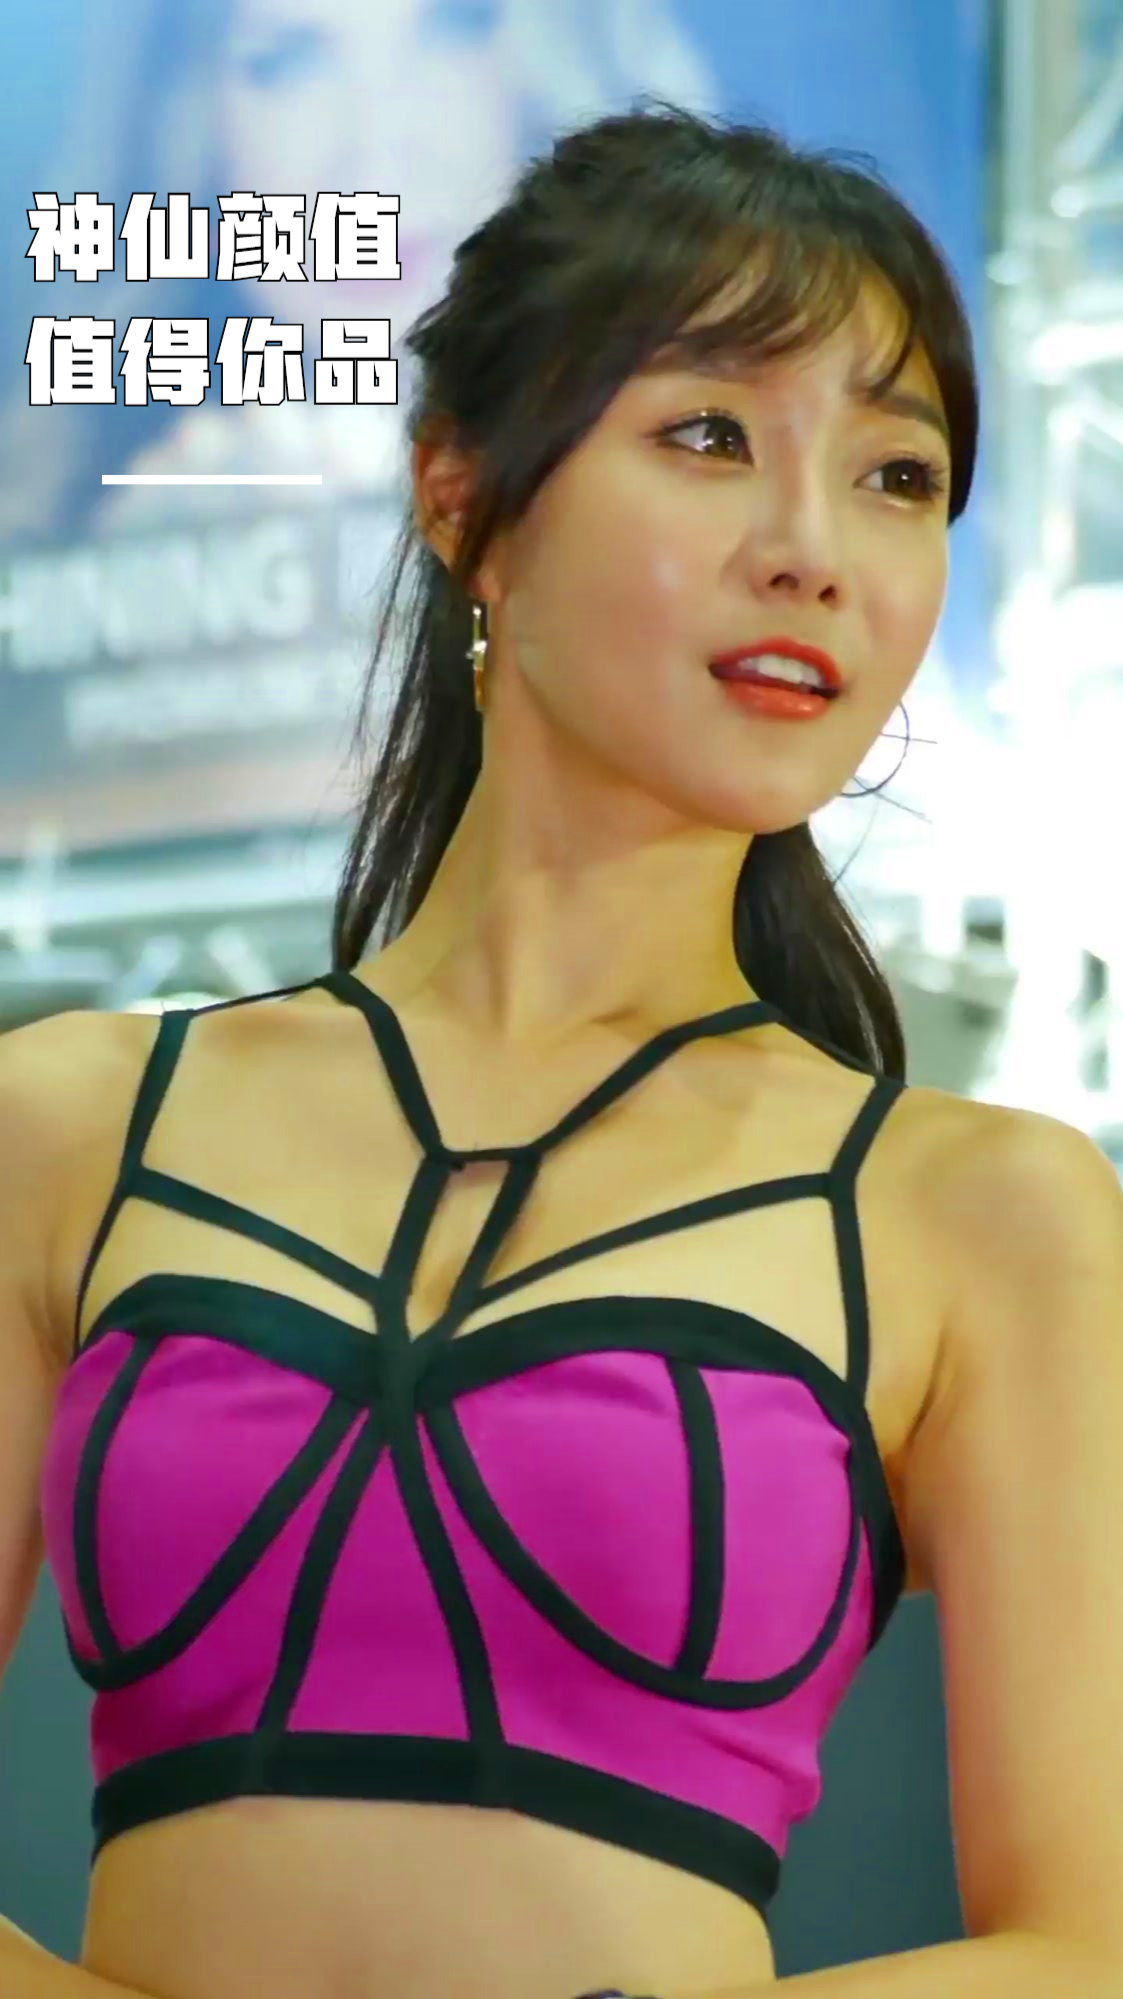 韩国美女车模崔瑟琪第二十六篇,颜值与身材都很赞,魅力十足